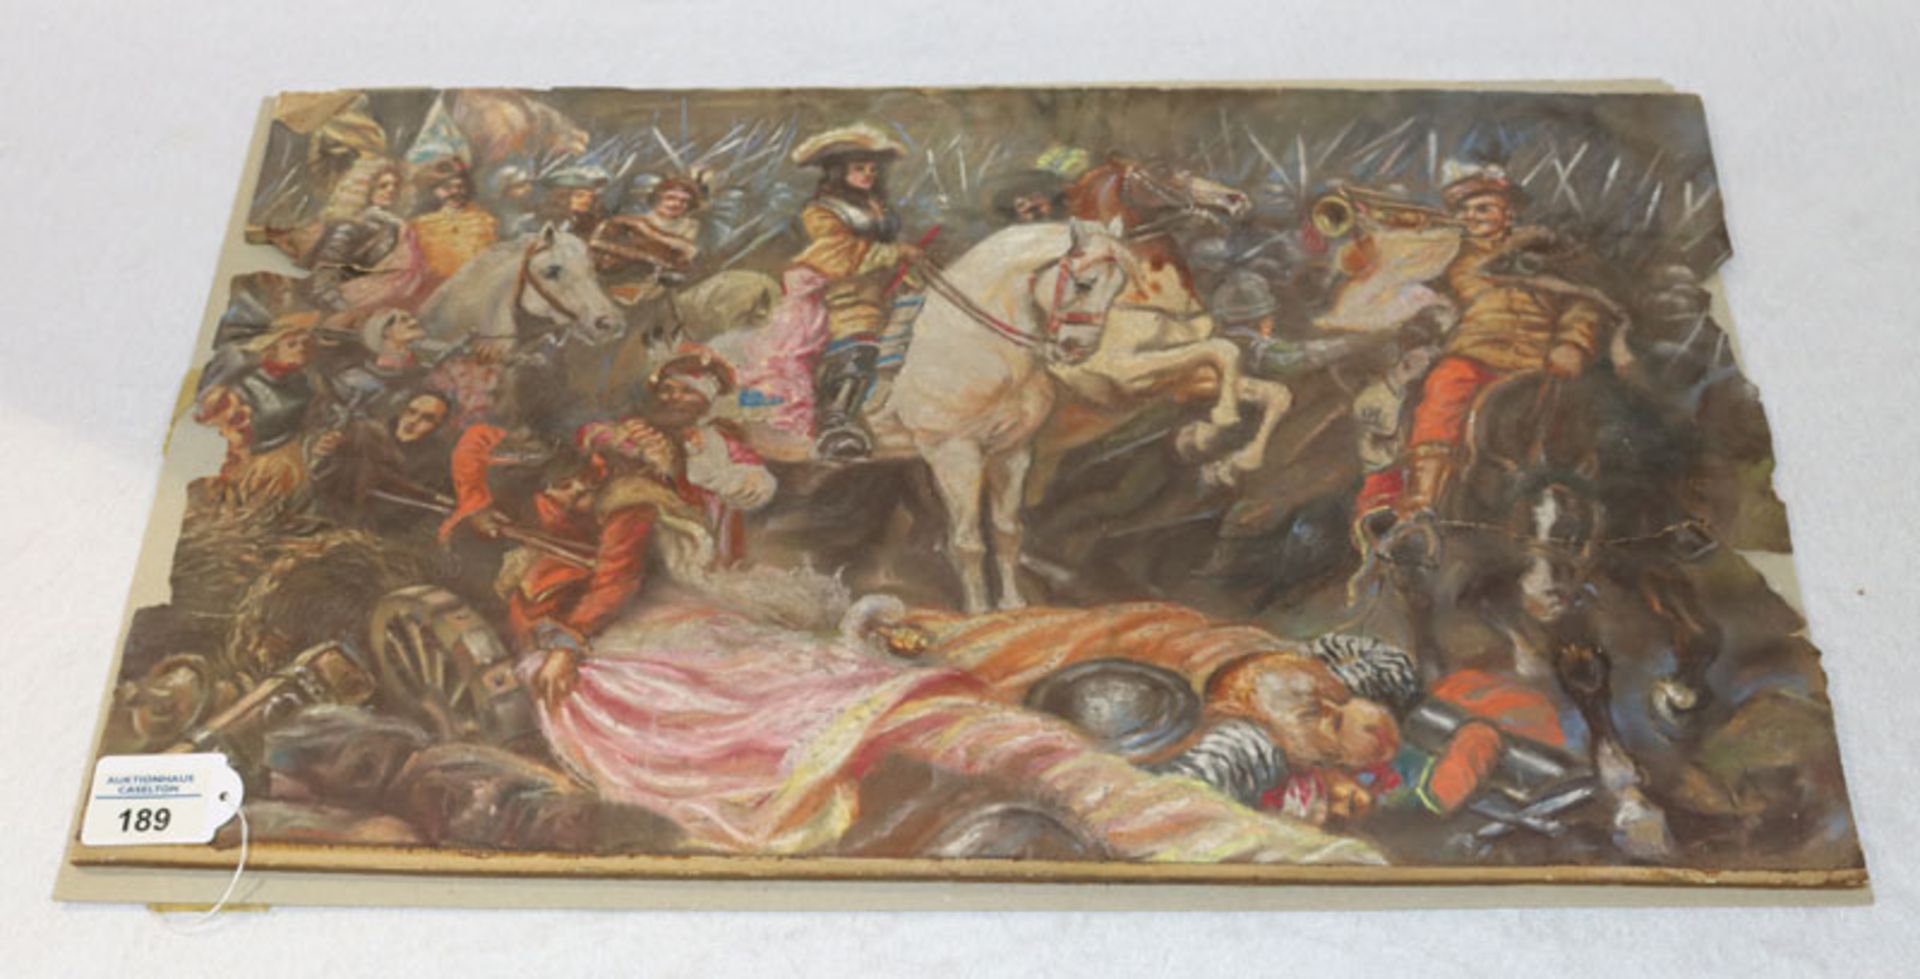 Gemälde Ölpastell/Papier 'Schlachtszenerie', attr. Anton Hoffmann, Papier sehr brüchig und